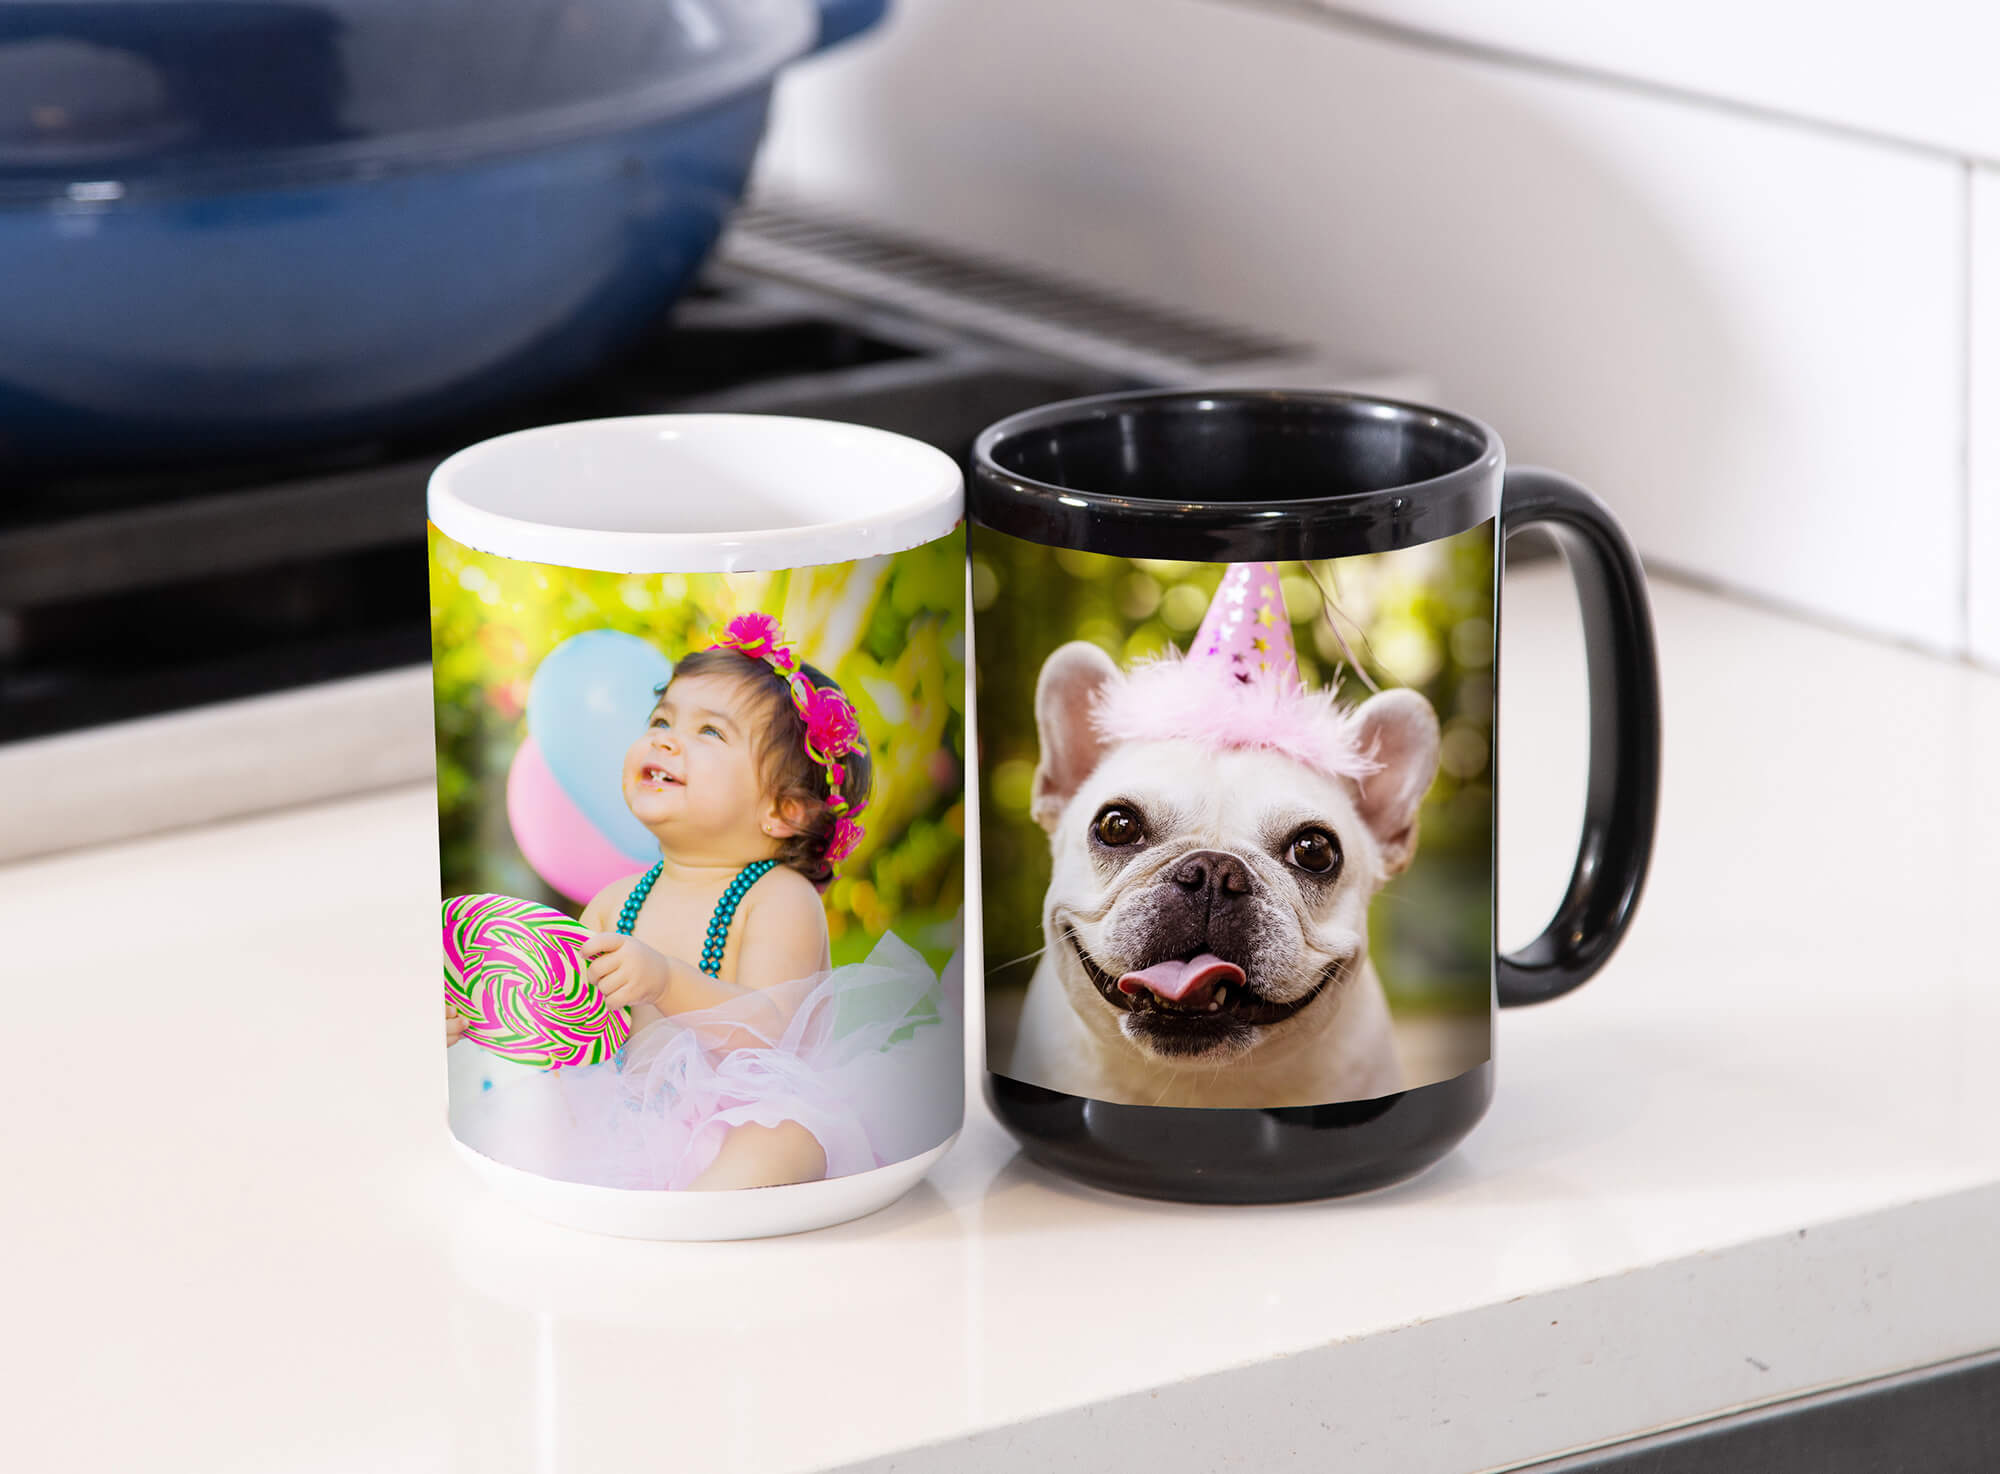 The Personalized Photo Mug